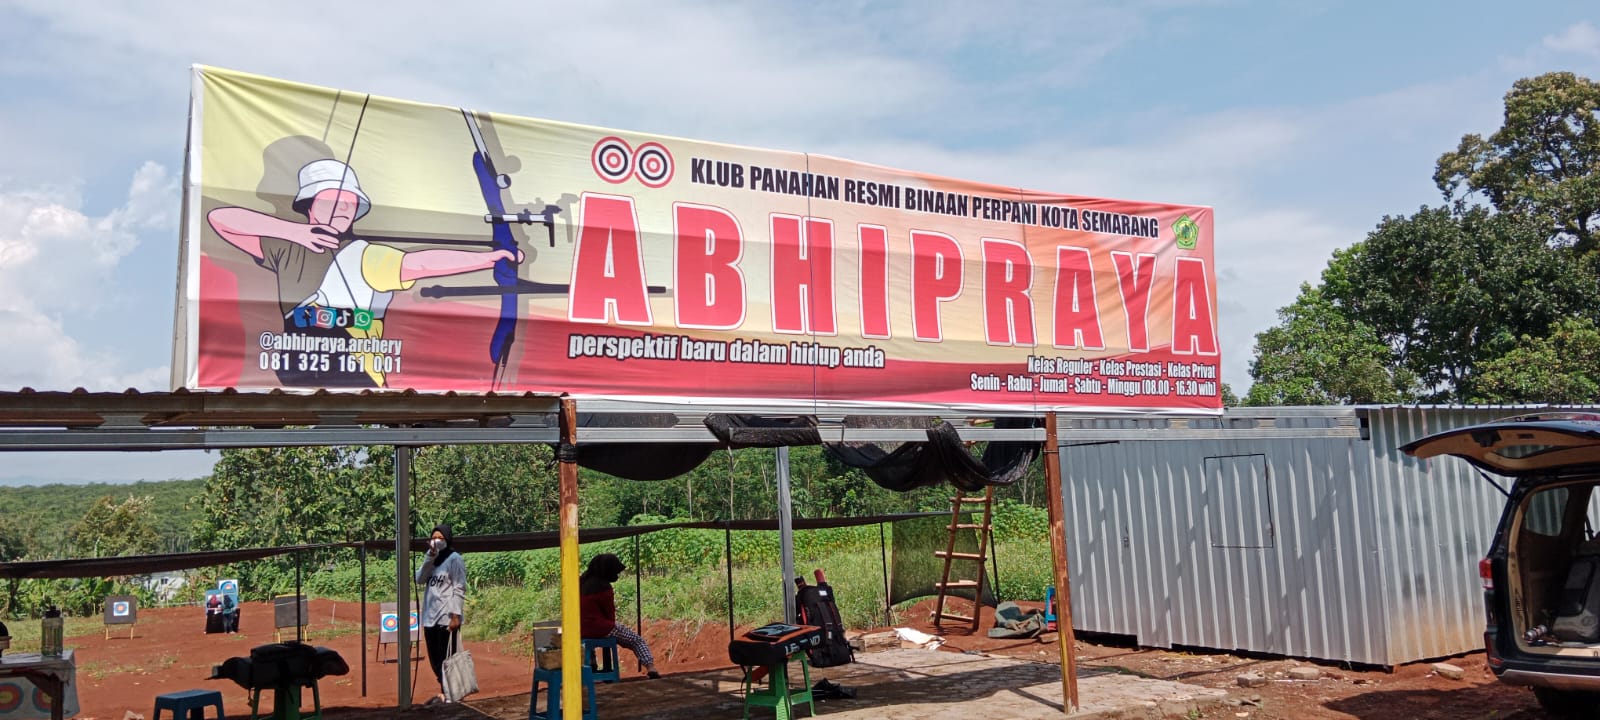 Berkenalan dengan Abhipraya Archery Club di Semarang